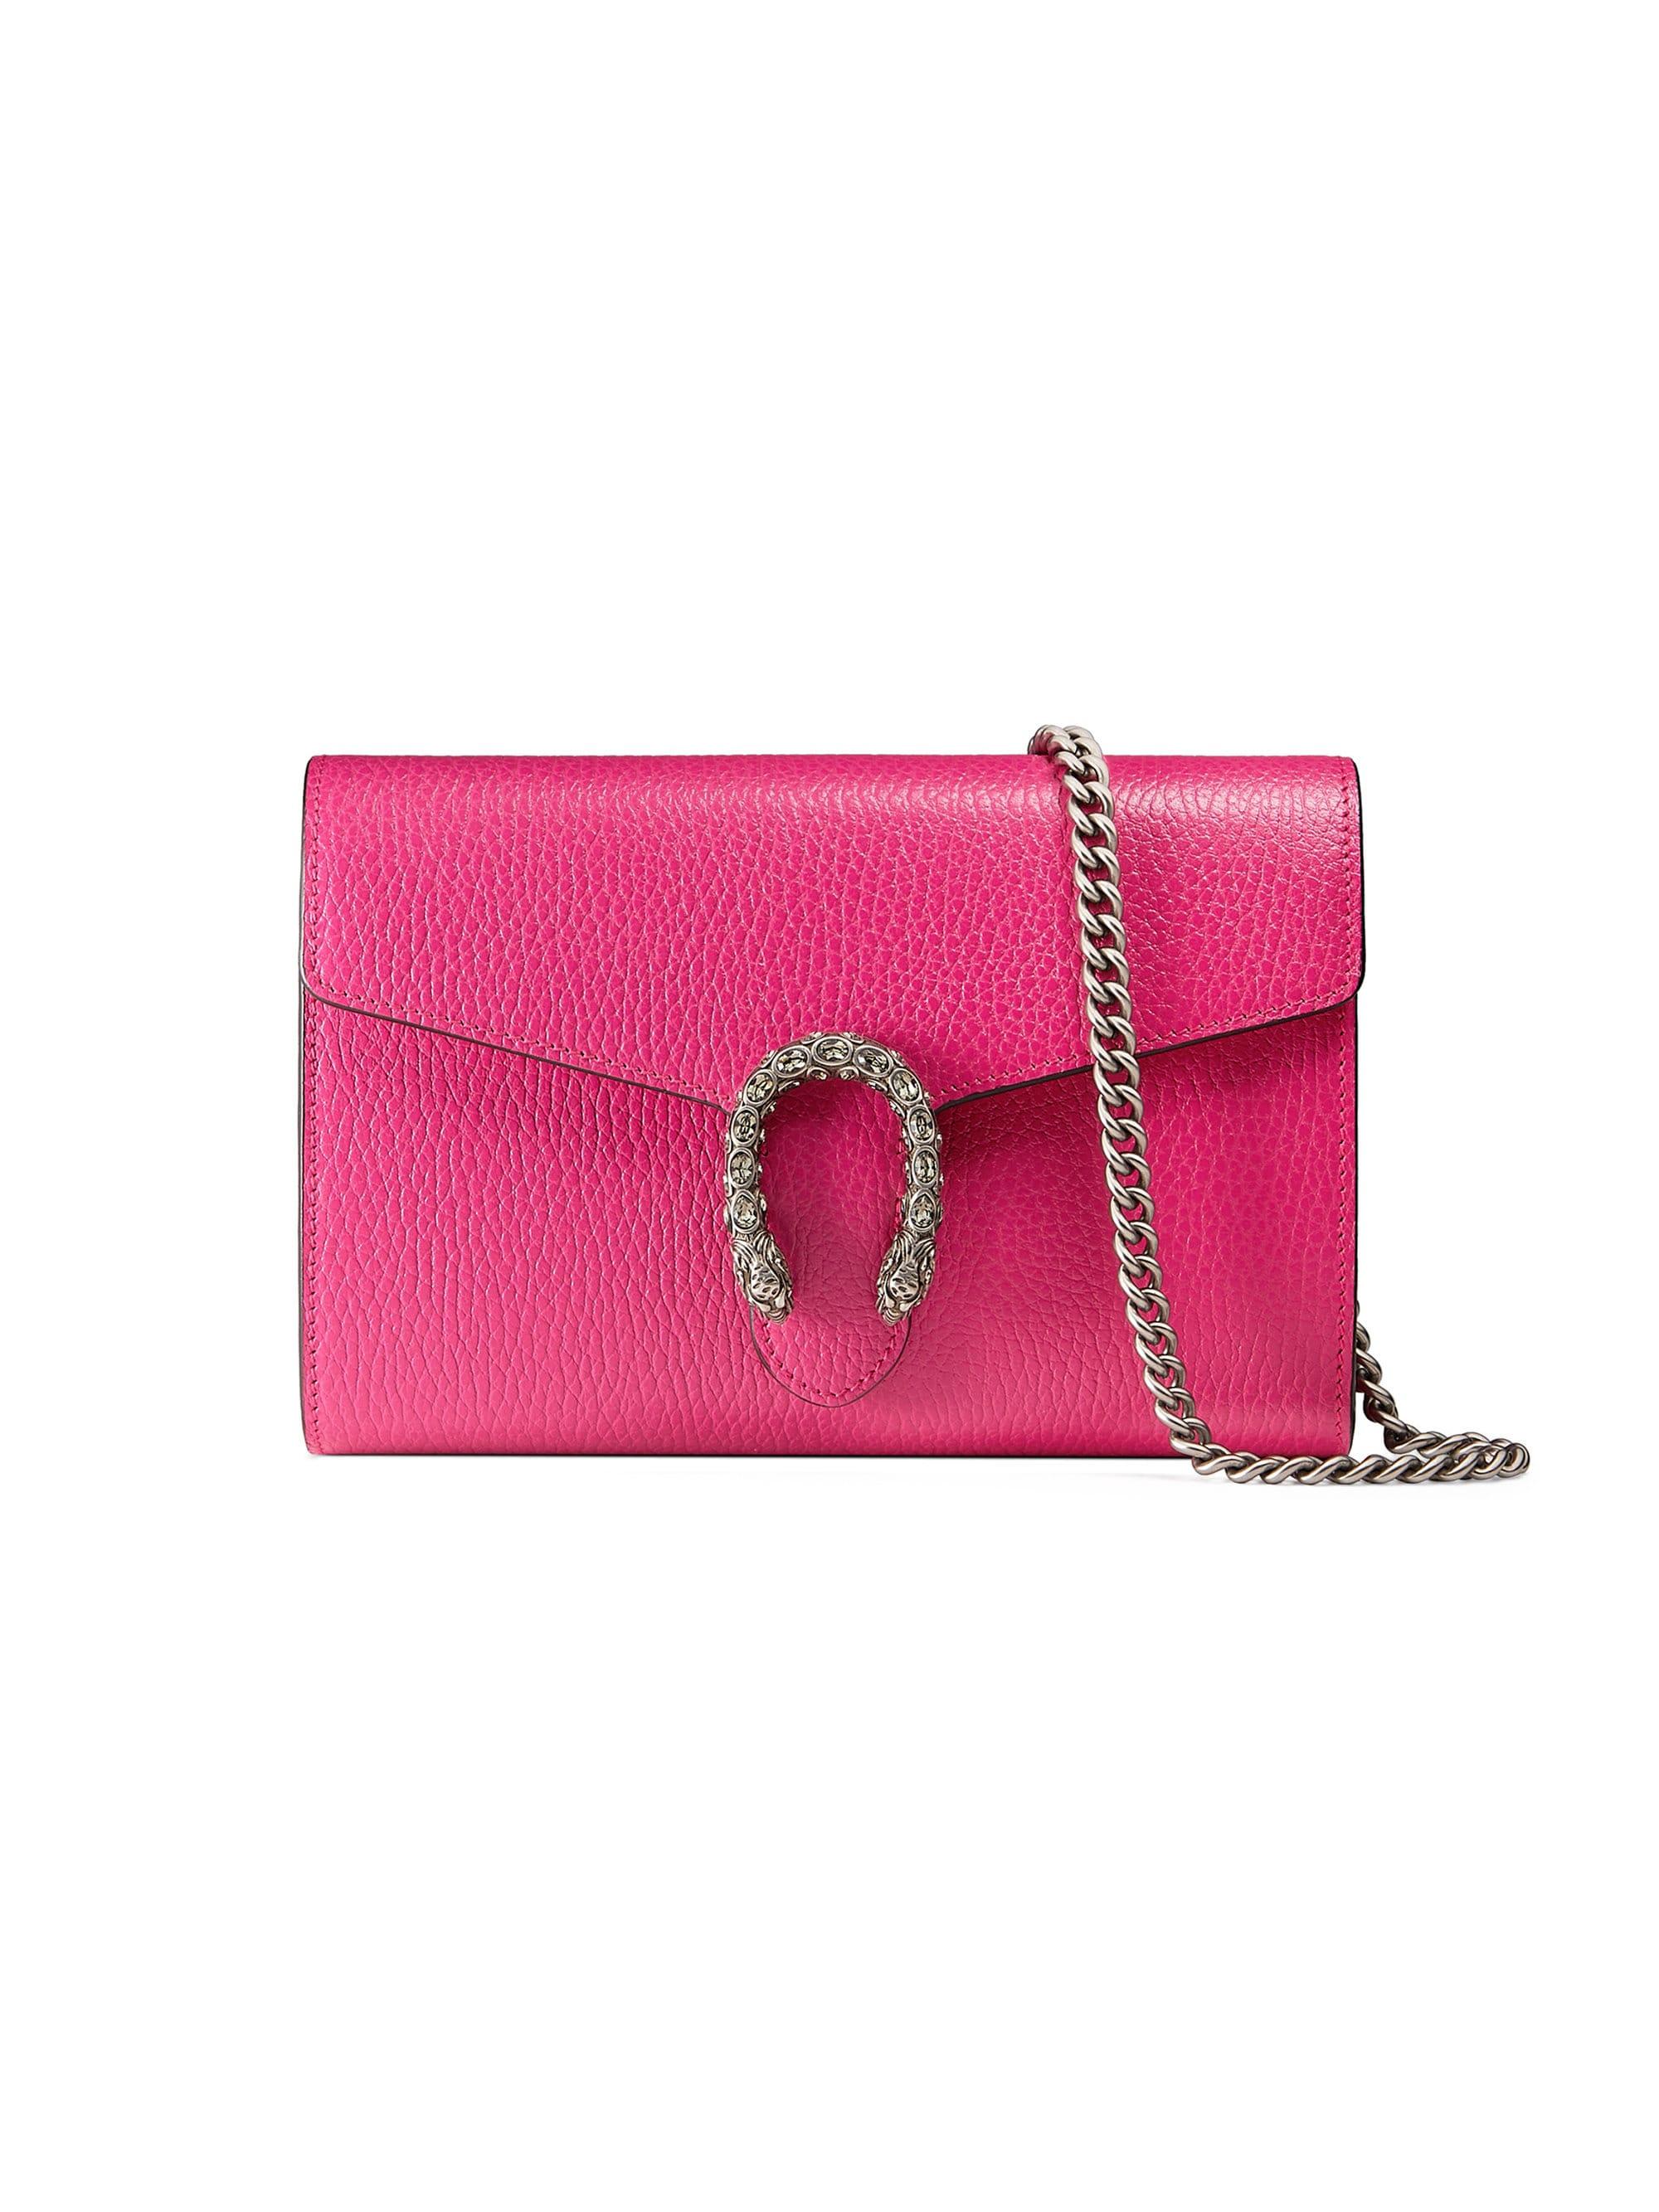 Gucci Dionysus Mini Leather Chain Clutch in Pink | Lyst